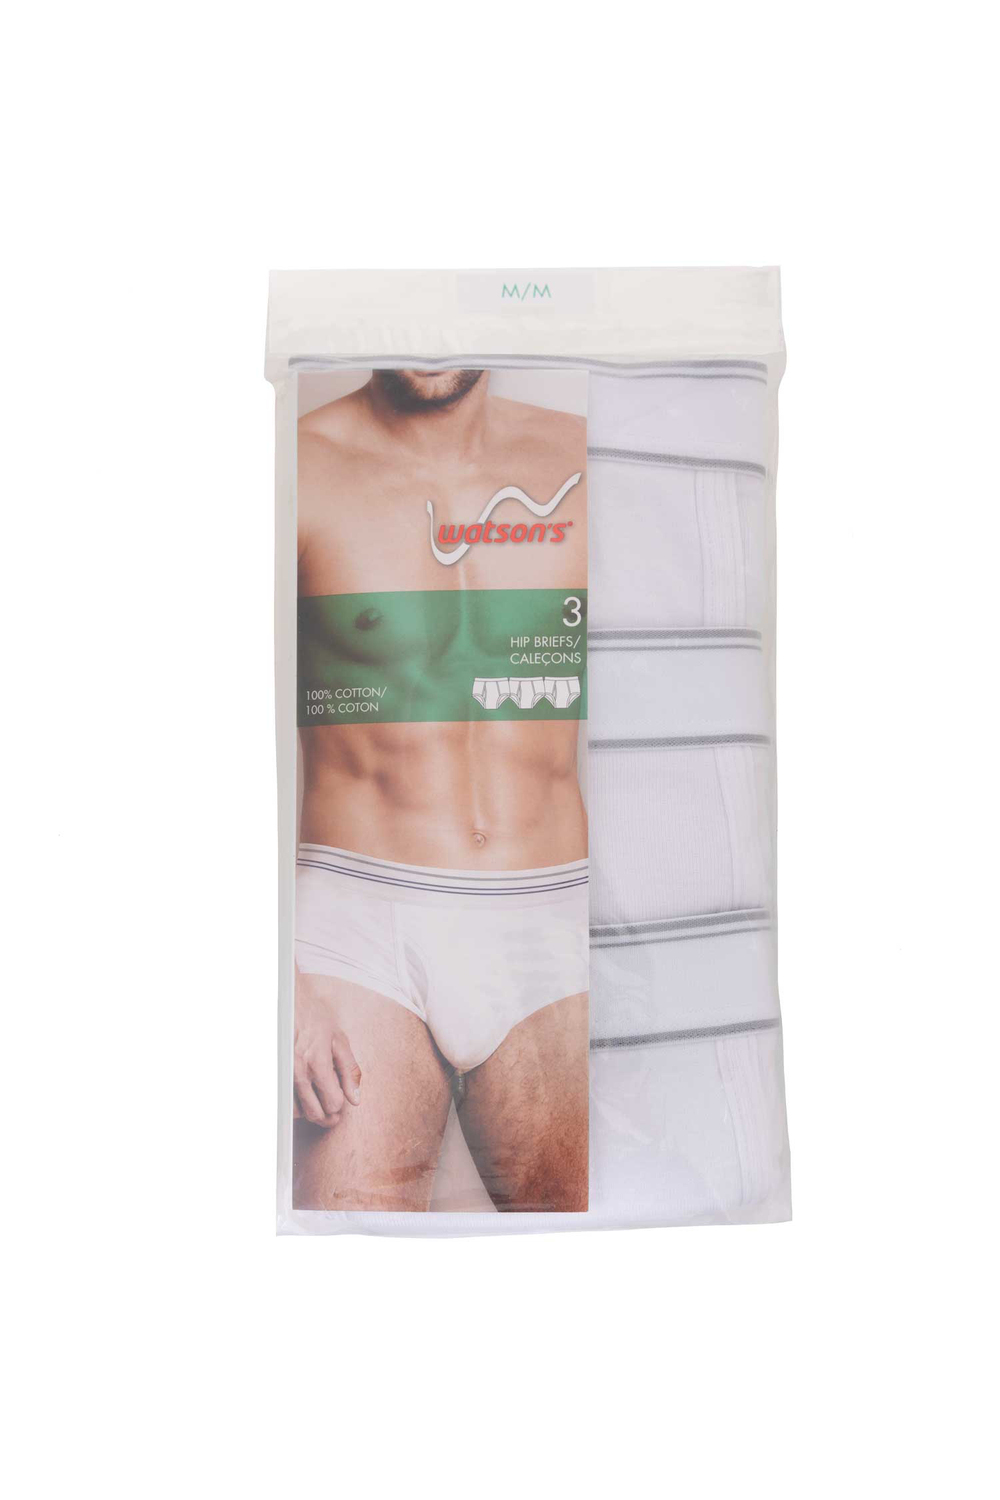 Watson's - Men's 100% cotton underwear, 3 pack hip briefs, white, extra large (XL)